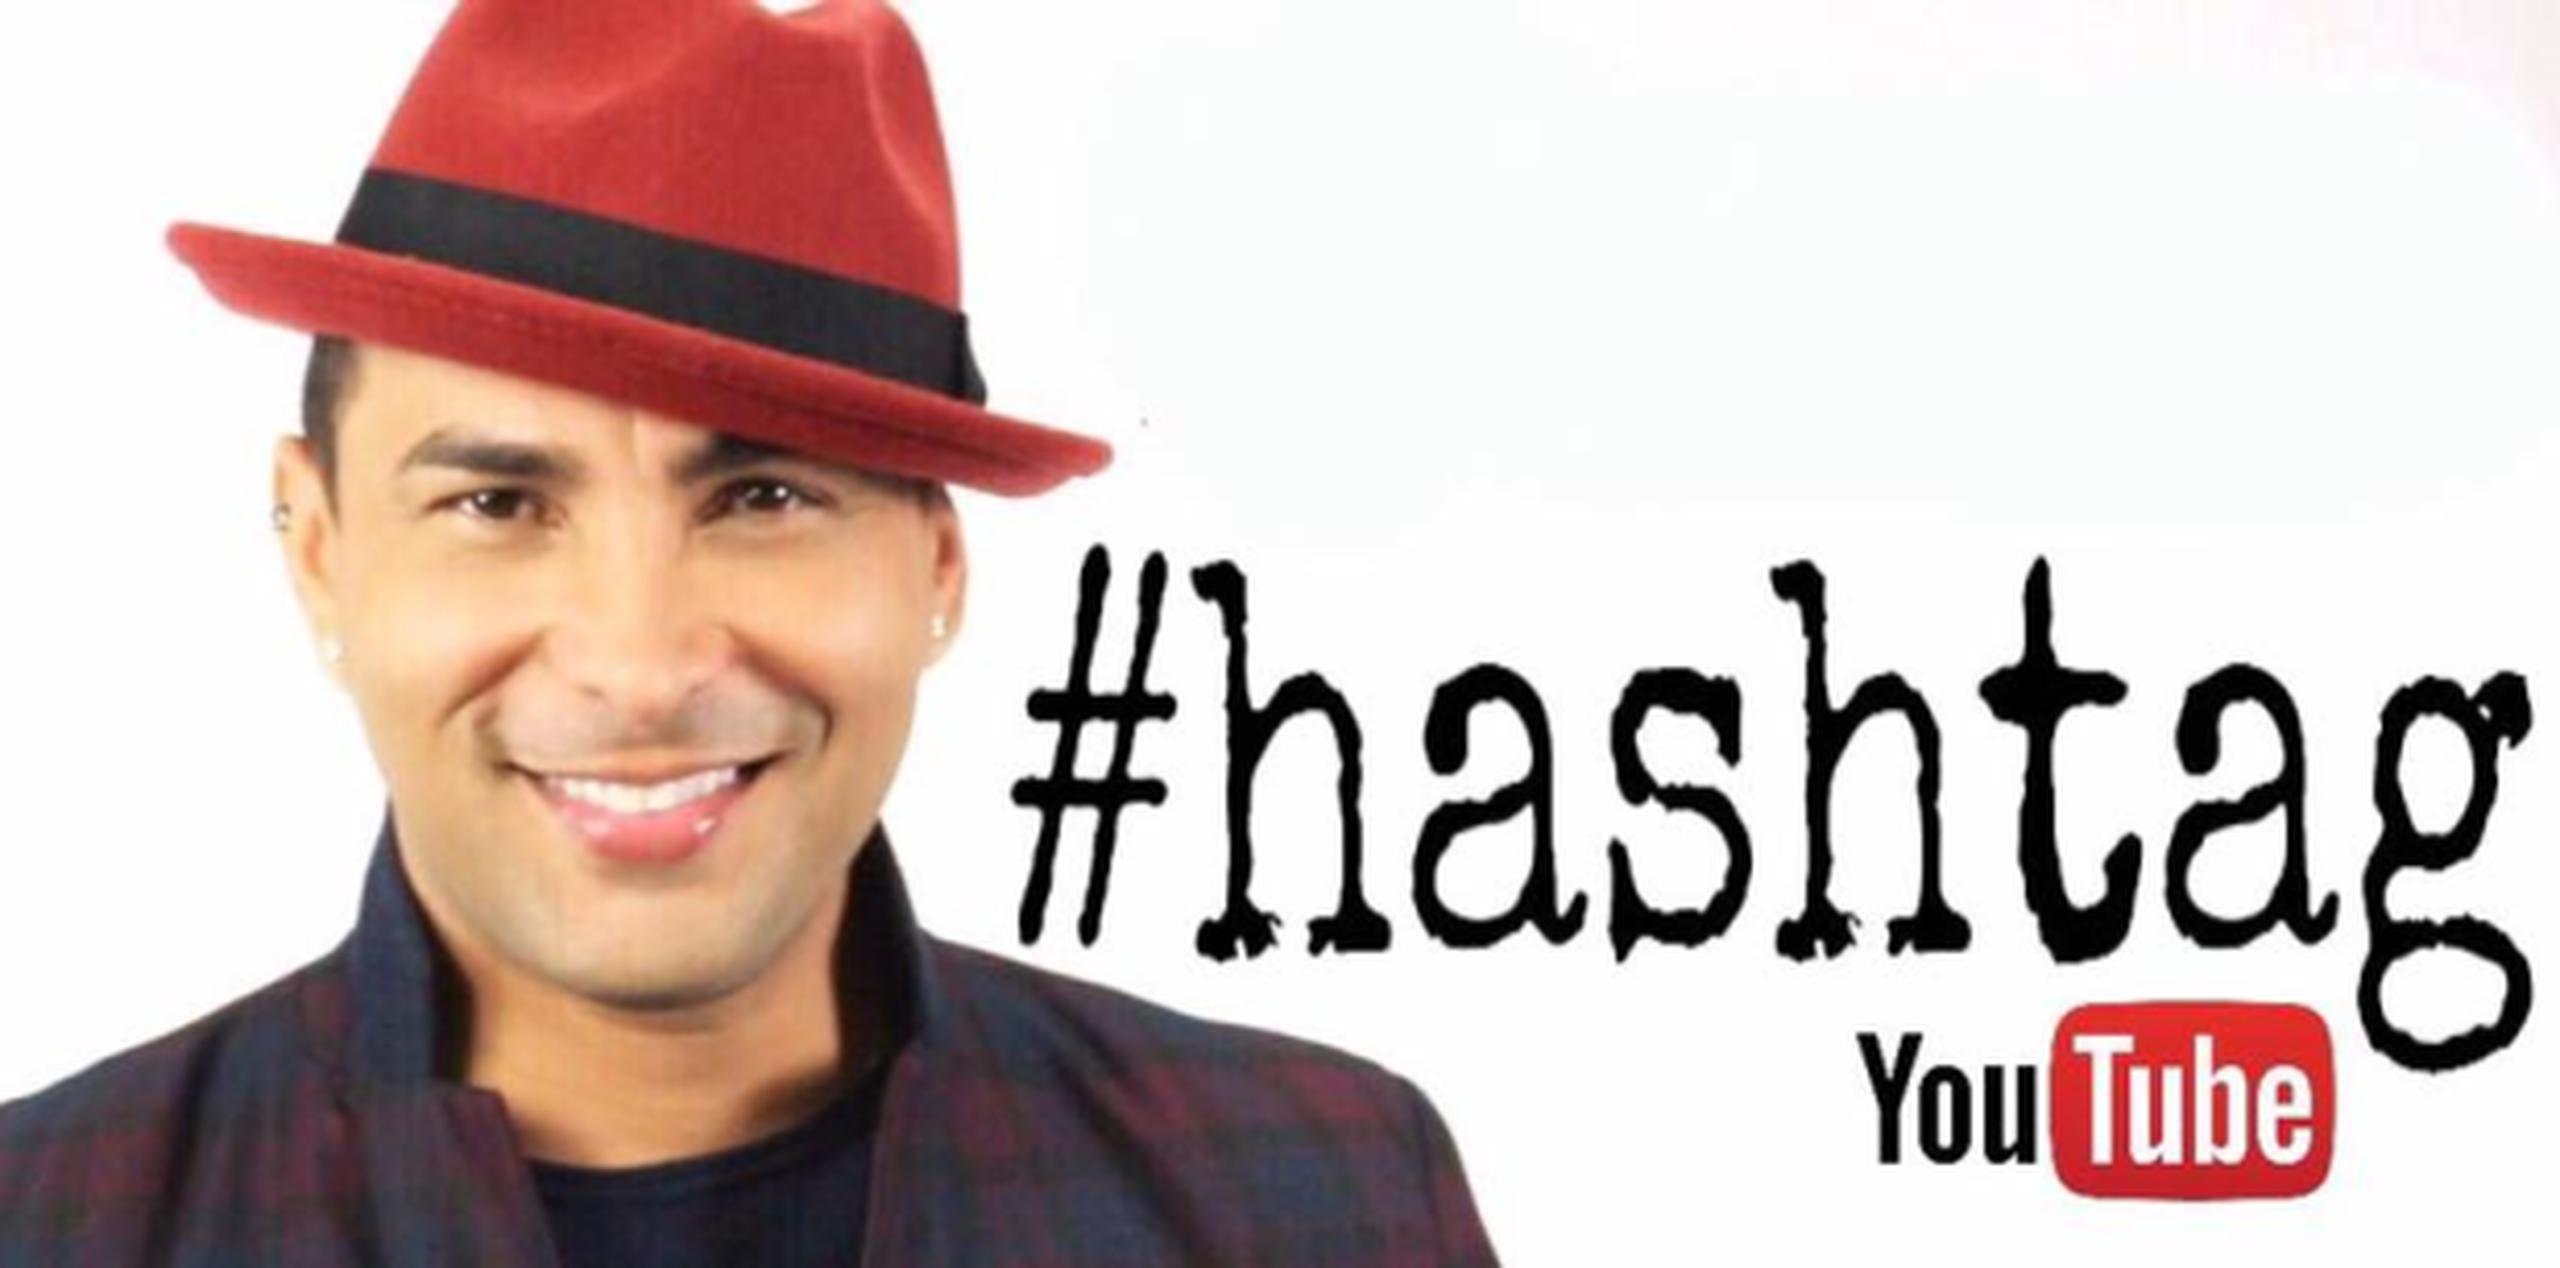 El 20 de febrero que saldrá el próximo episodio de #hashtag. (Facebook)